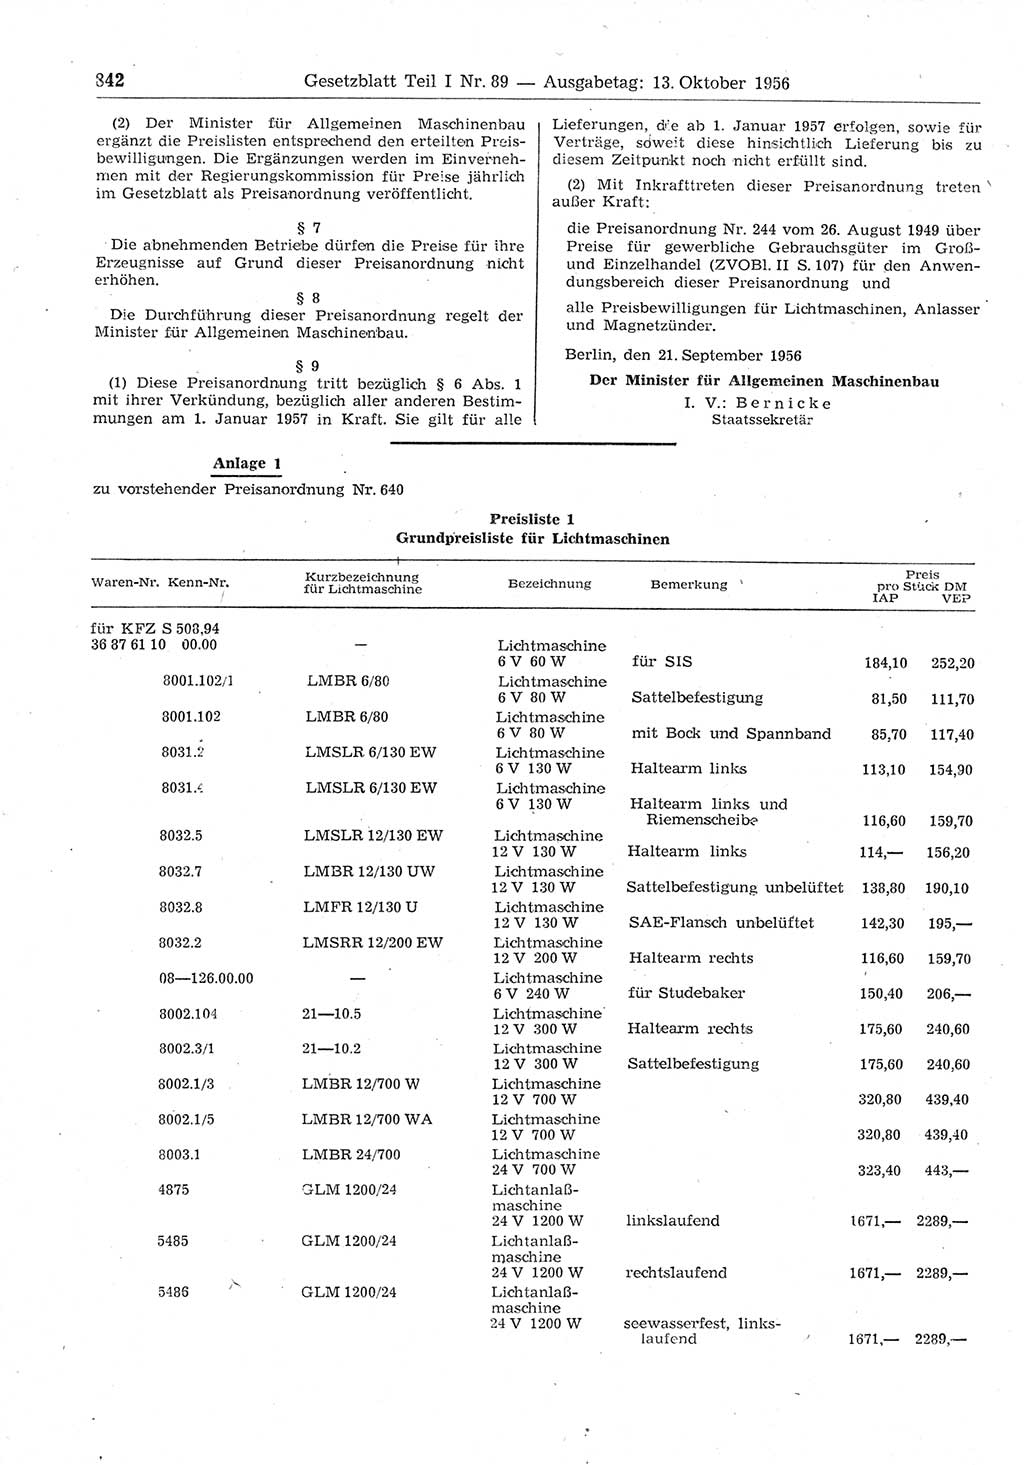 Gesetzblatt (GBl.) der Deutschen Demokratischen Republik (DDR) Teil Ⅰ 1956, Seite 842 (GBl. DDR Ⅰ 1956, S. 842)